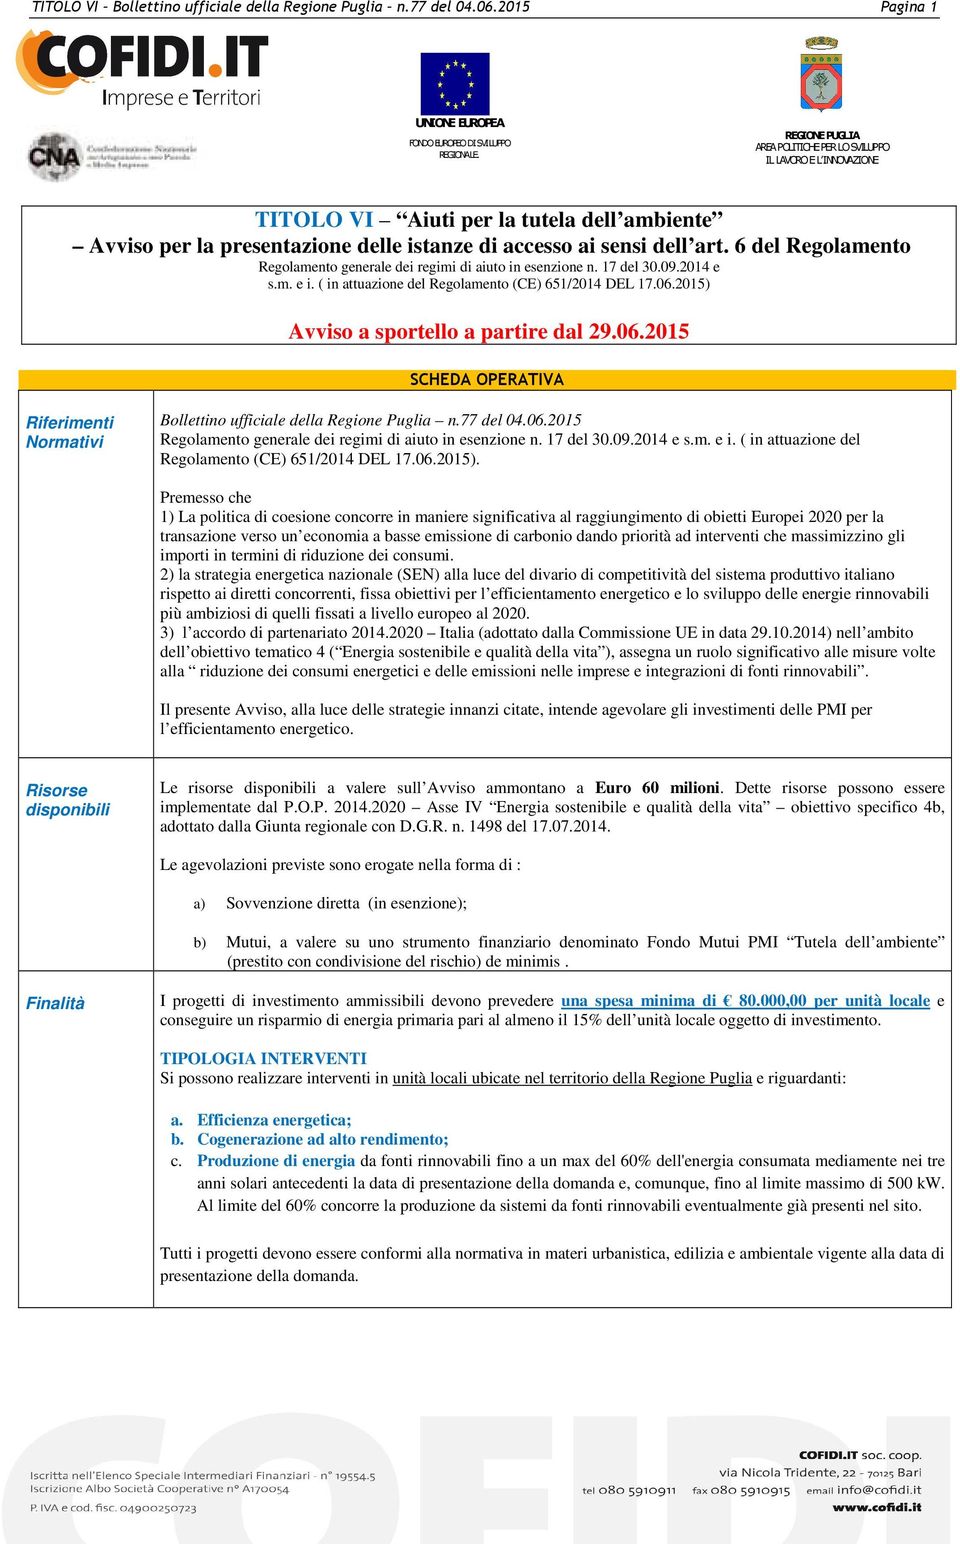 6 del Regolamento Regolamento generale dei regimi di aiuto in esenzione n. 17 del 30.09.2014 e s.m. e i. ( in attuazione del Regolamento (CE) 651/2014 DEL 17.06.